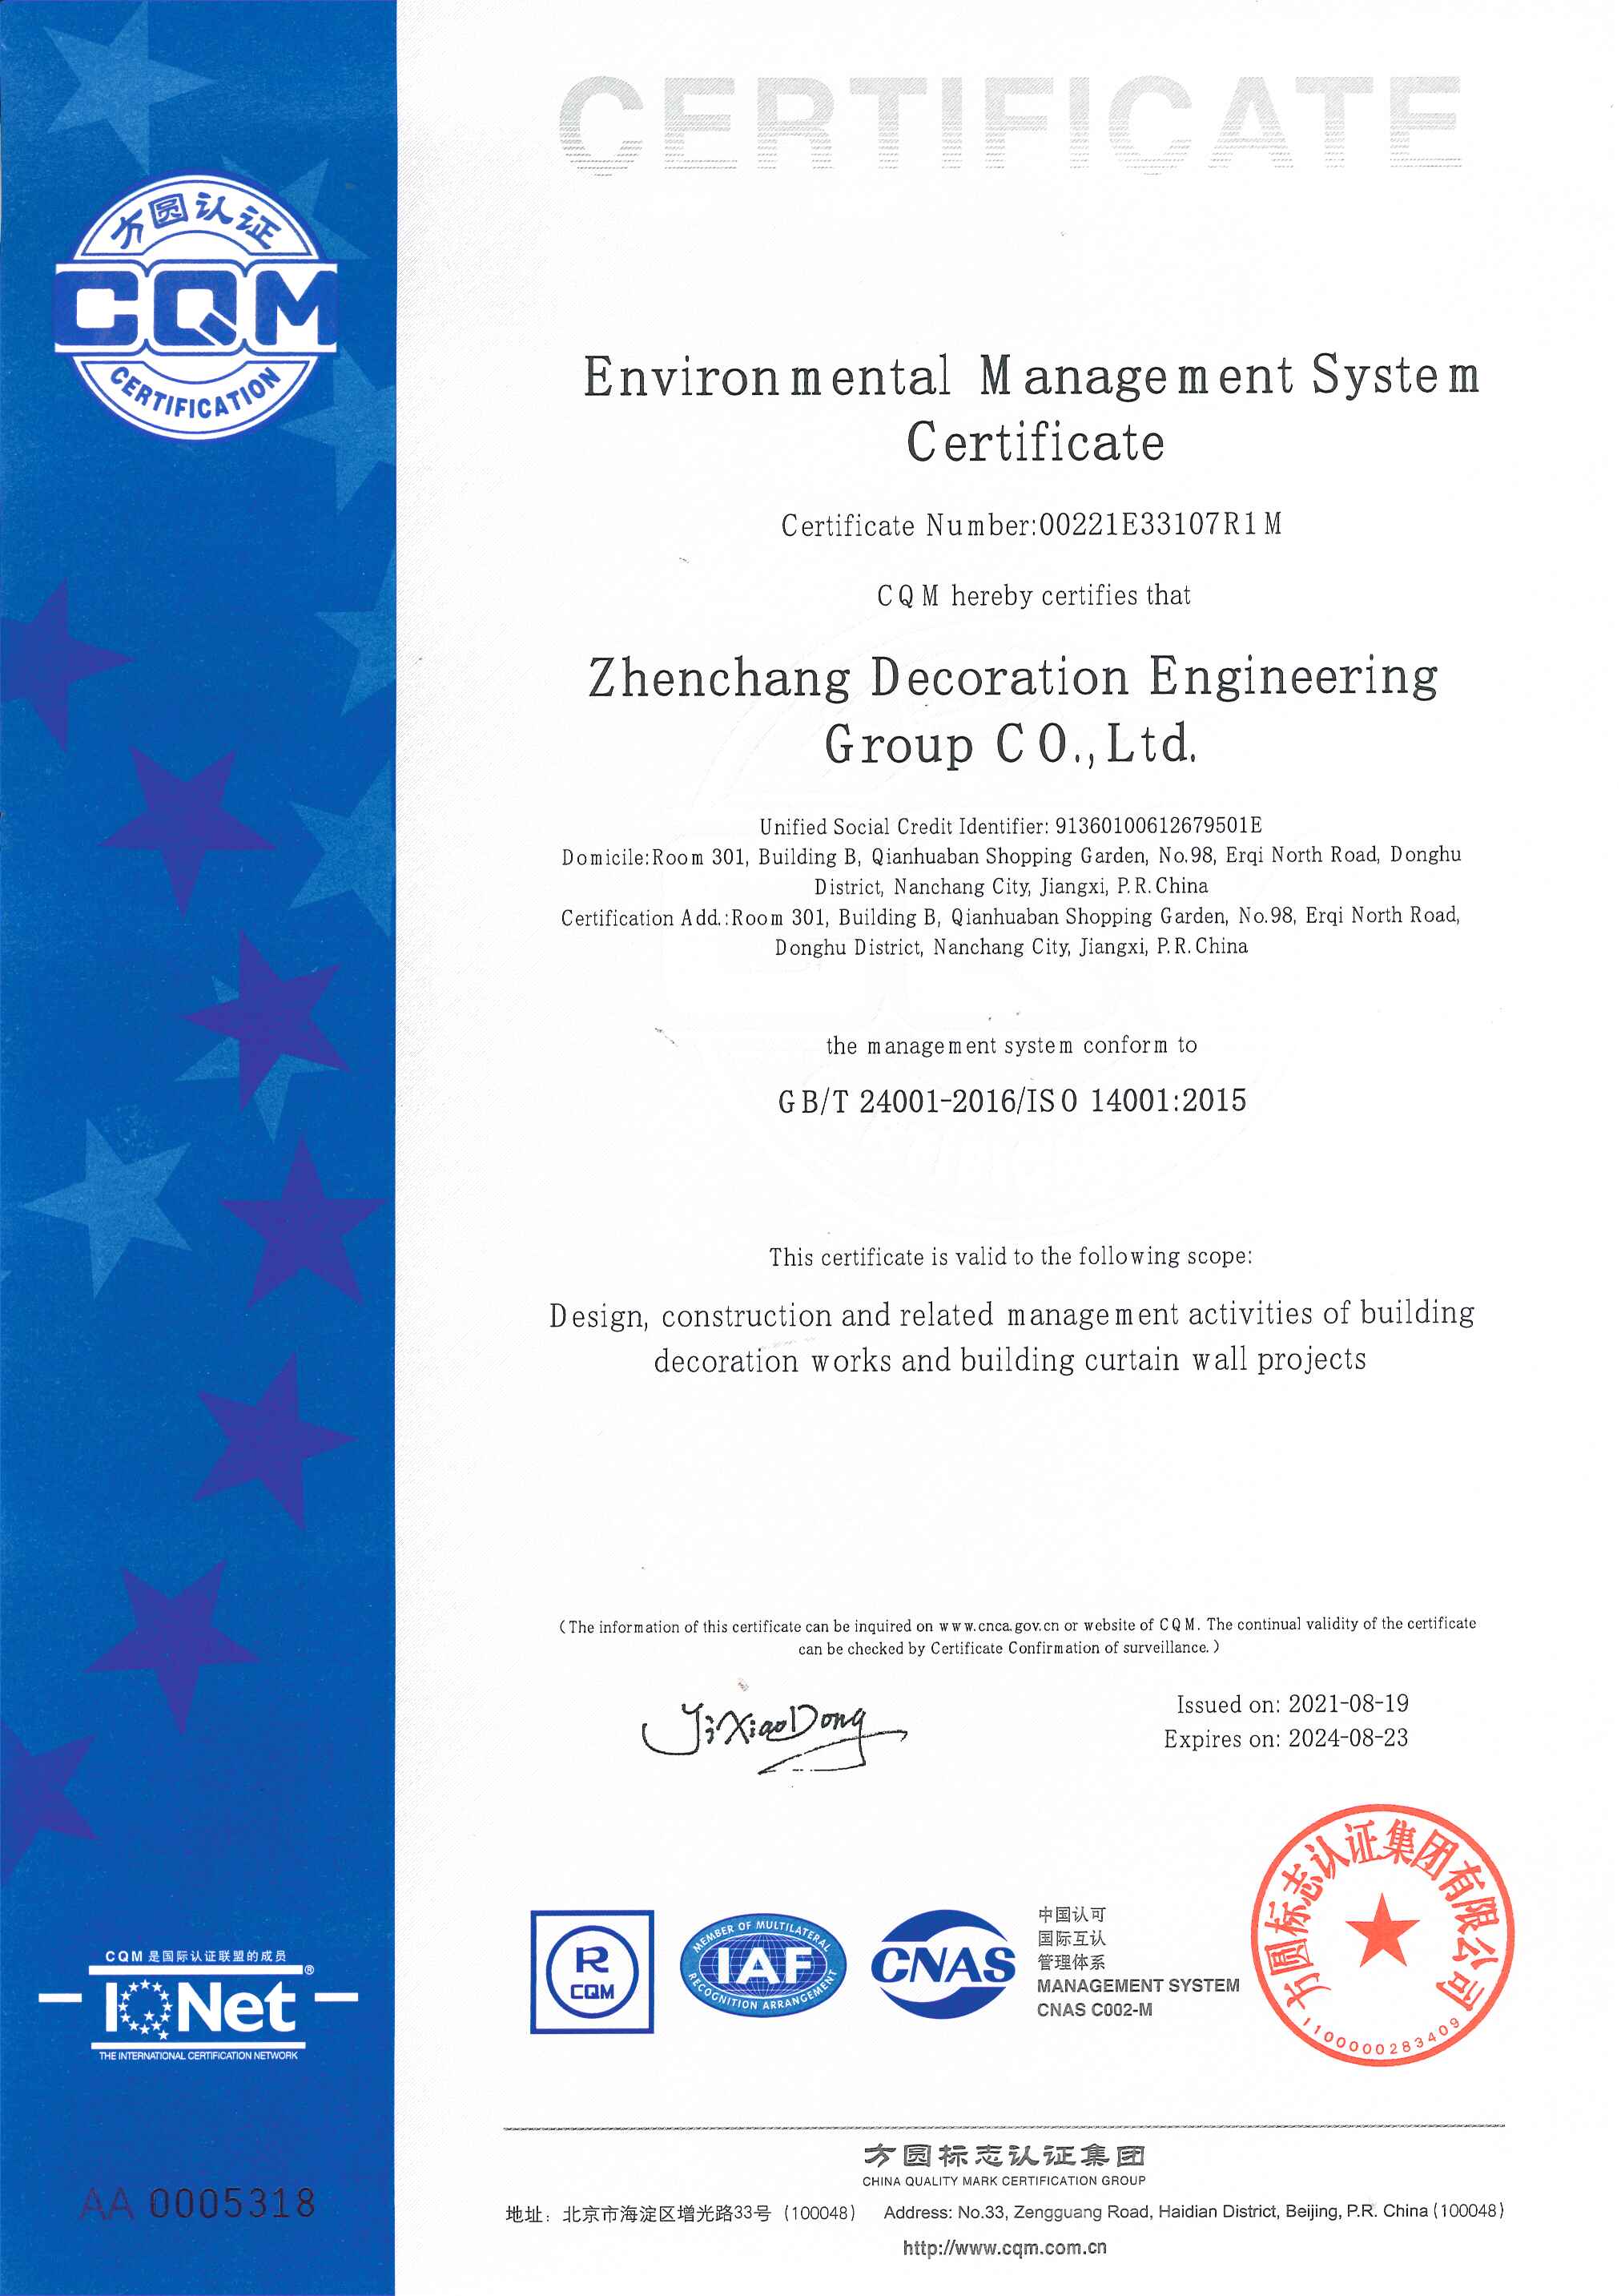 2021環境管理體系認證證書-英文版